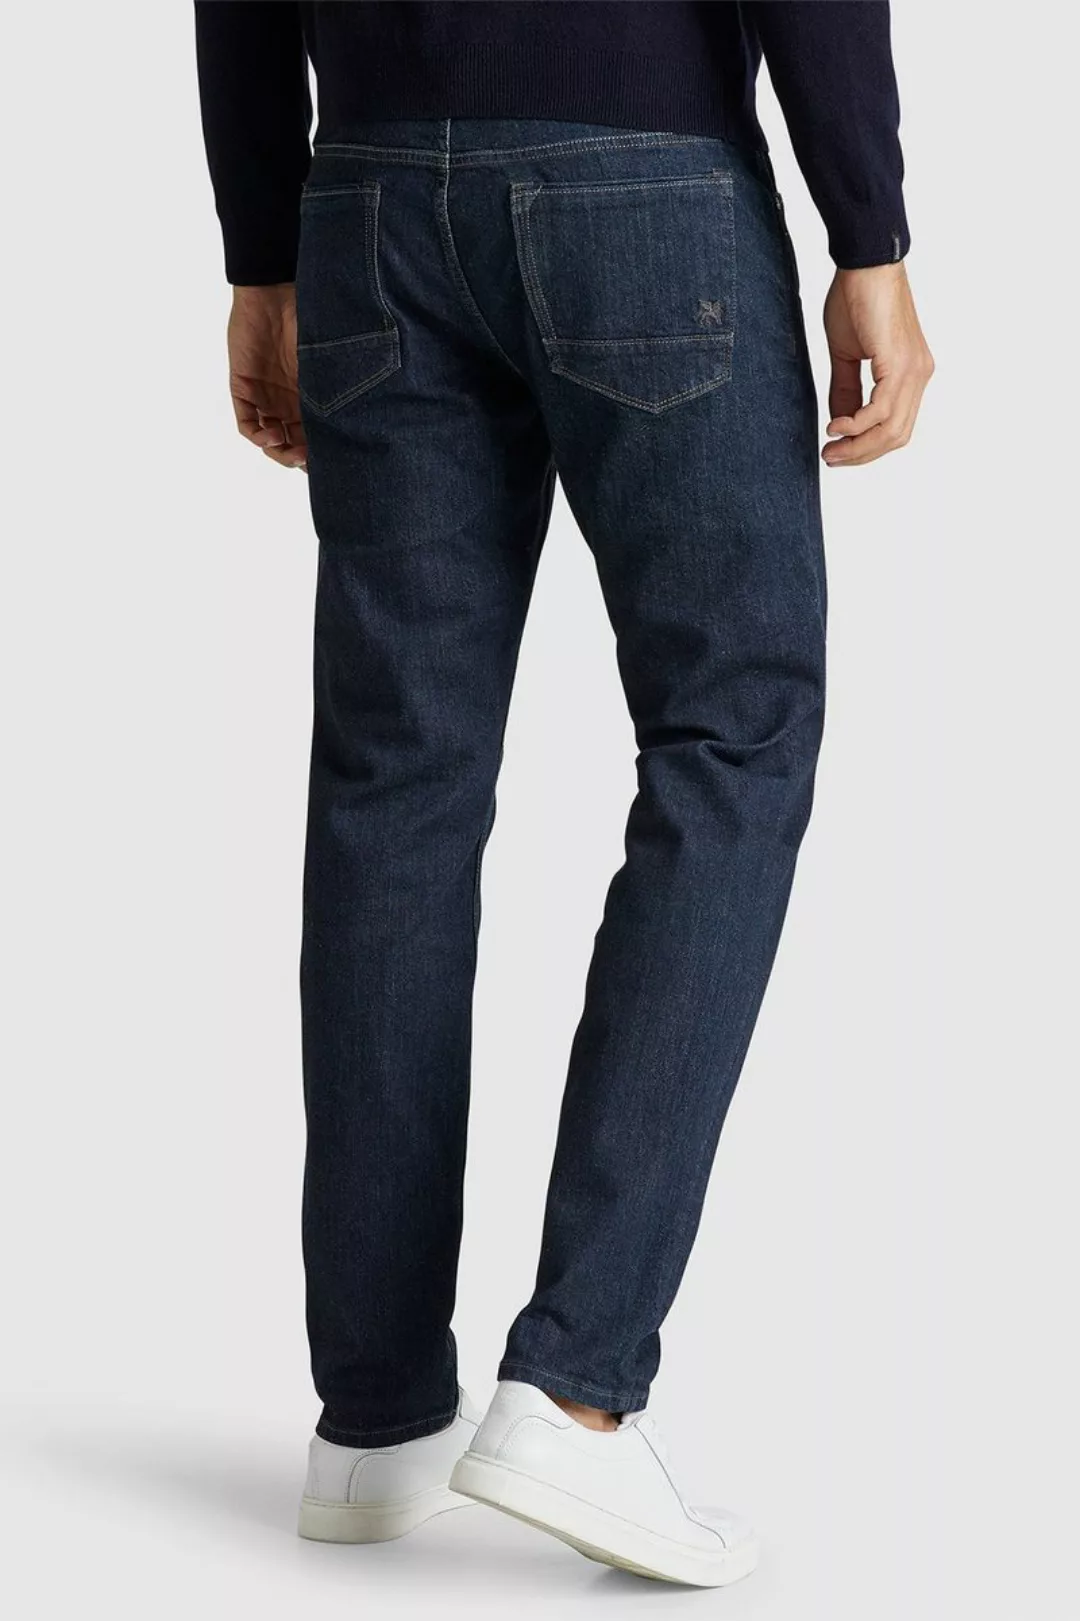 Vanguard Jeans V7 Rider Dunkelblau - Größe W 32 - L 36 günstig online kaufen